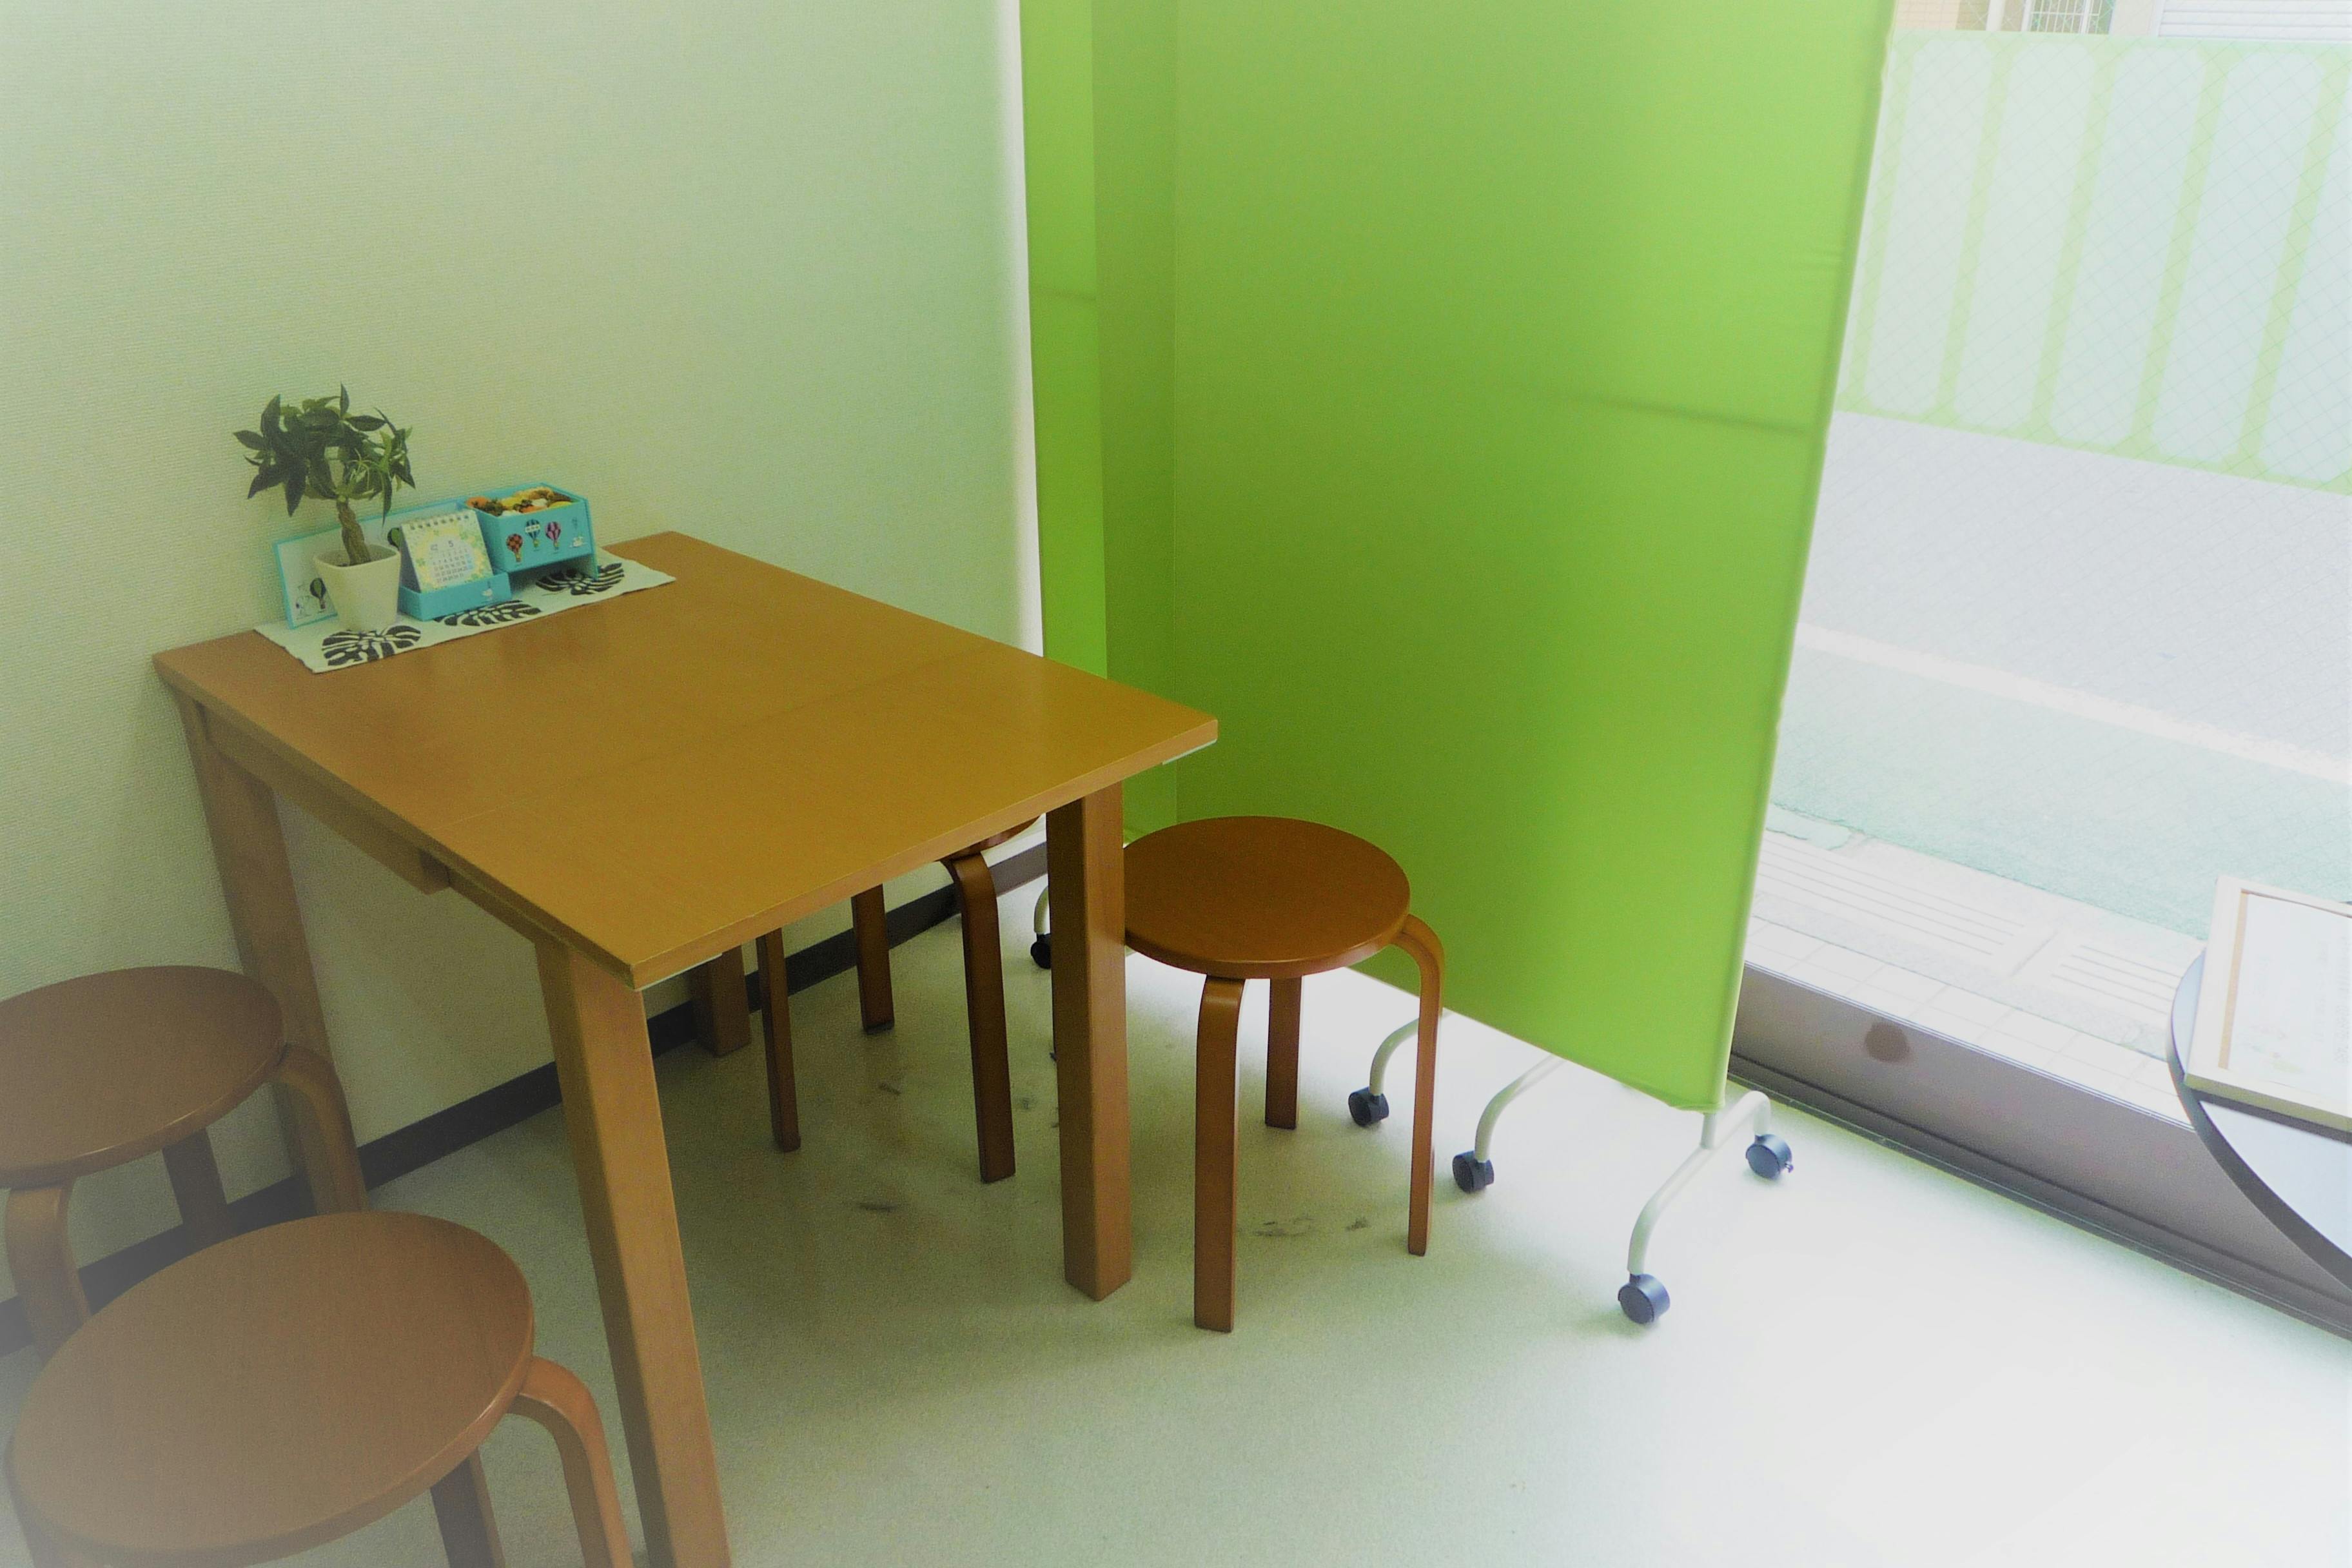 テーブルは折り畳み式移動可能で、パーテンションで仕切れます。